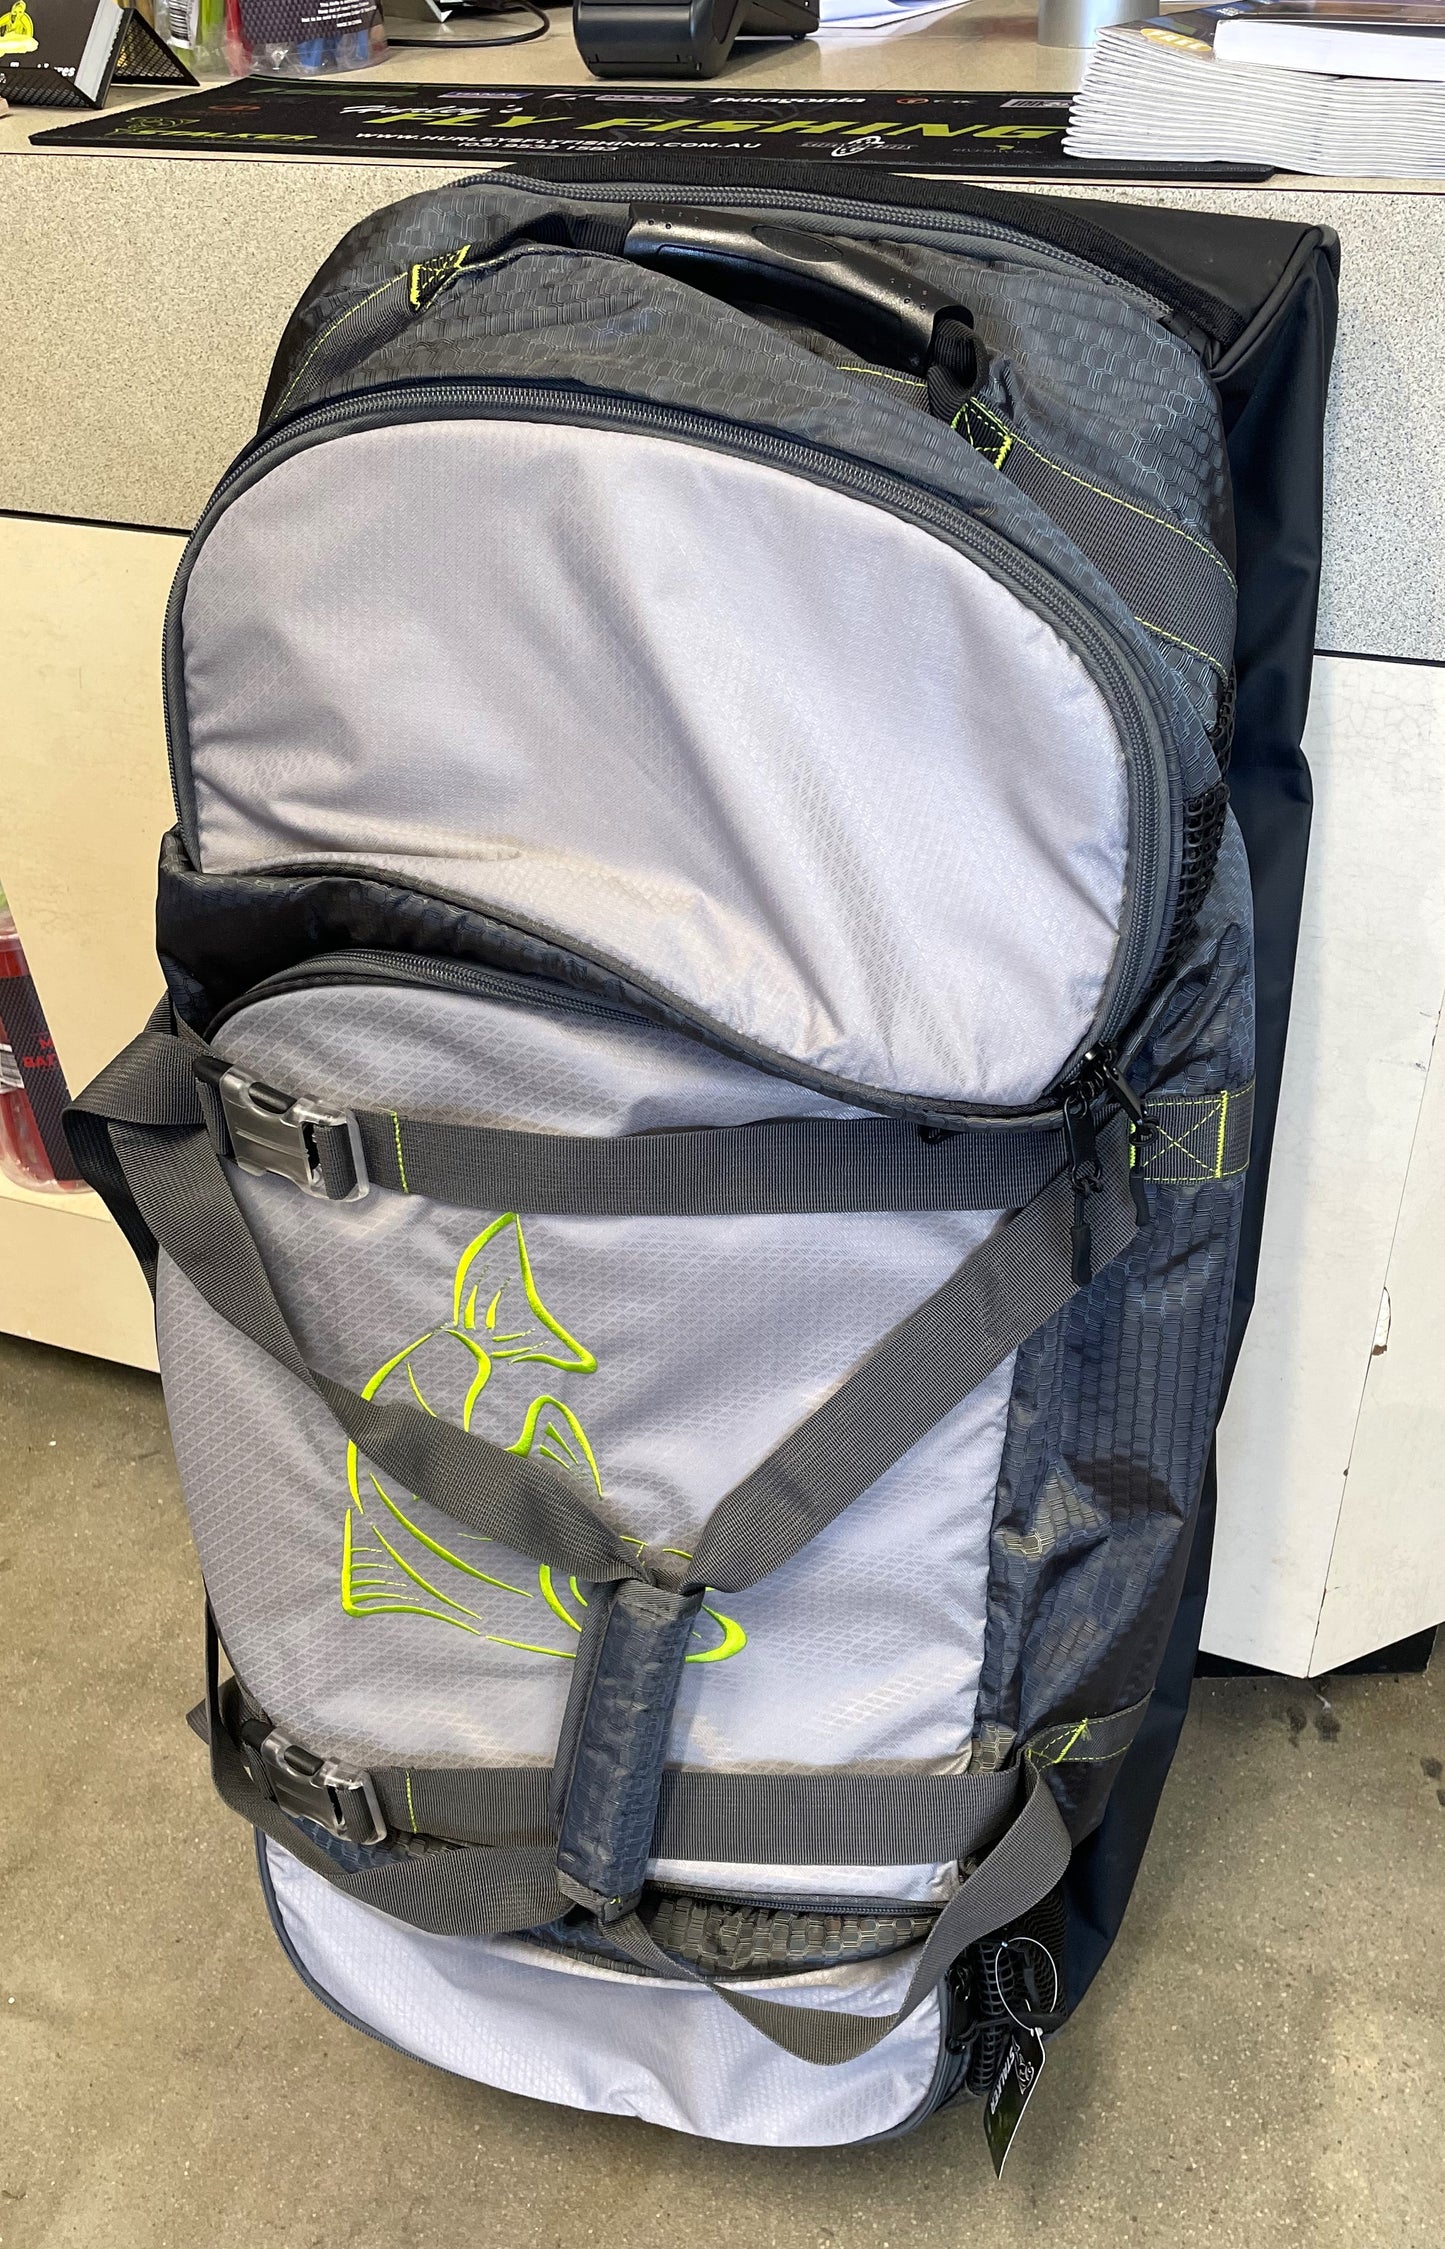 Stalker Glide Travel Bag